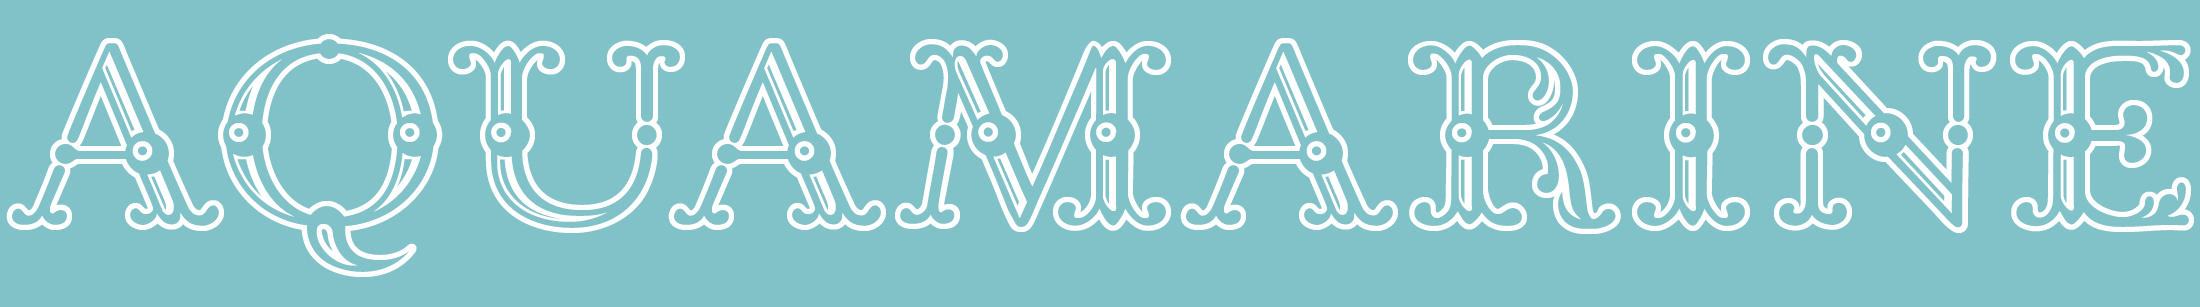 Aquamarine Typeface Banner